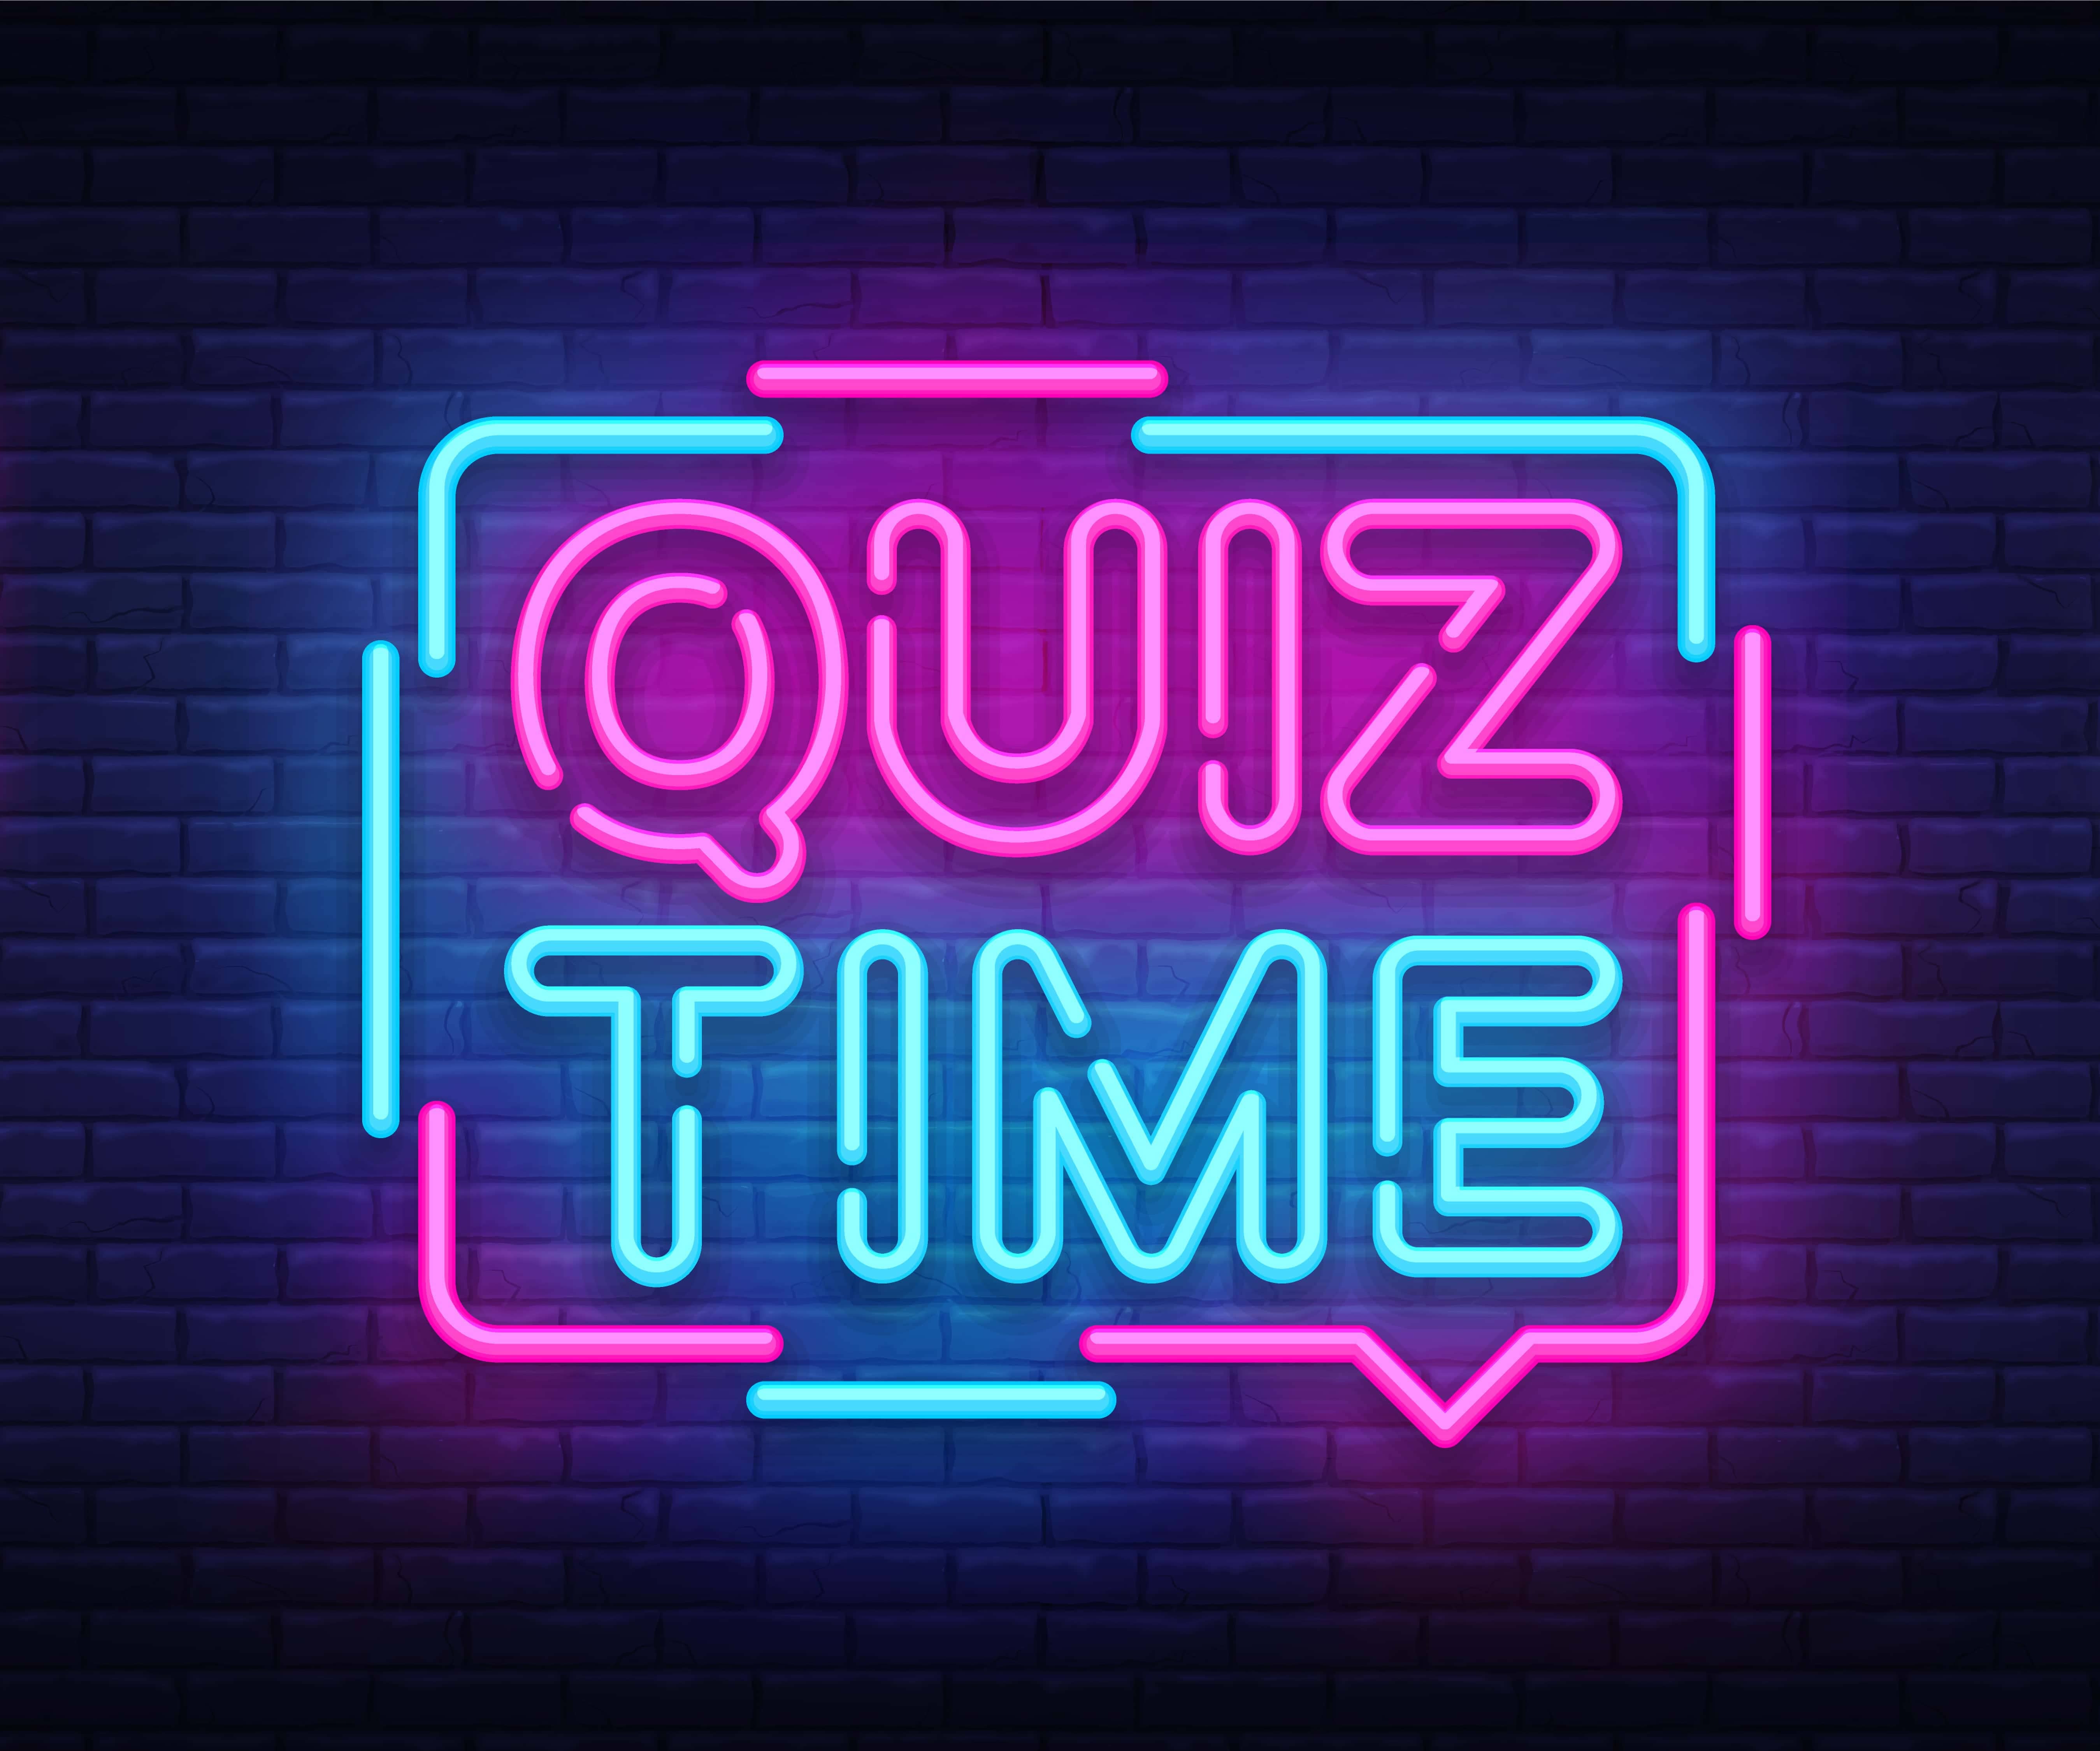 Anúncio Quiz Time poster neon signboard vector. Pub Quiz vintage